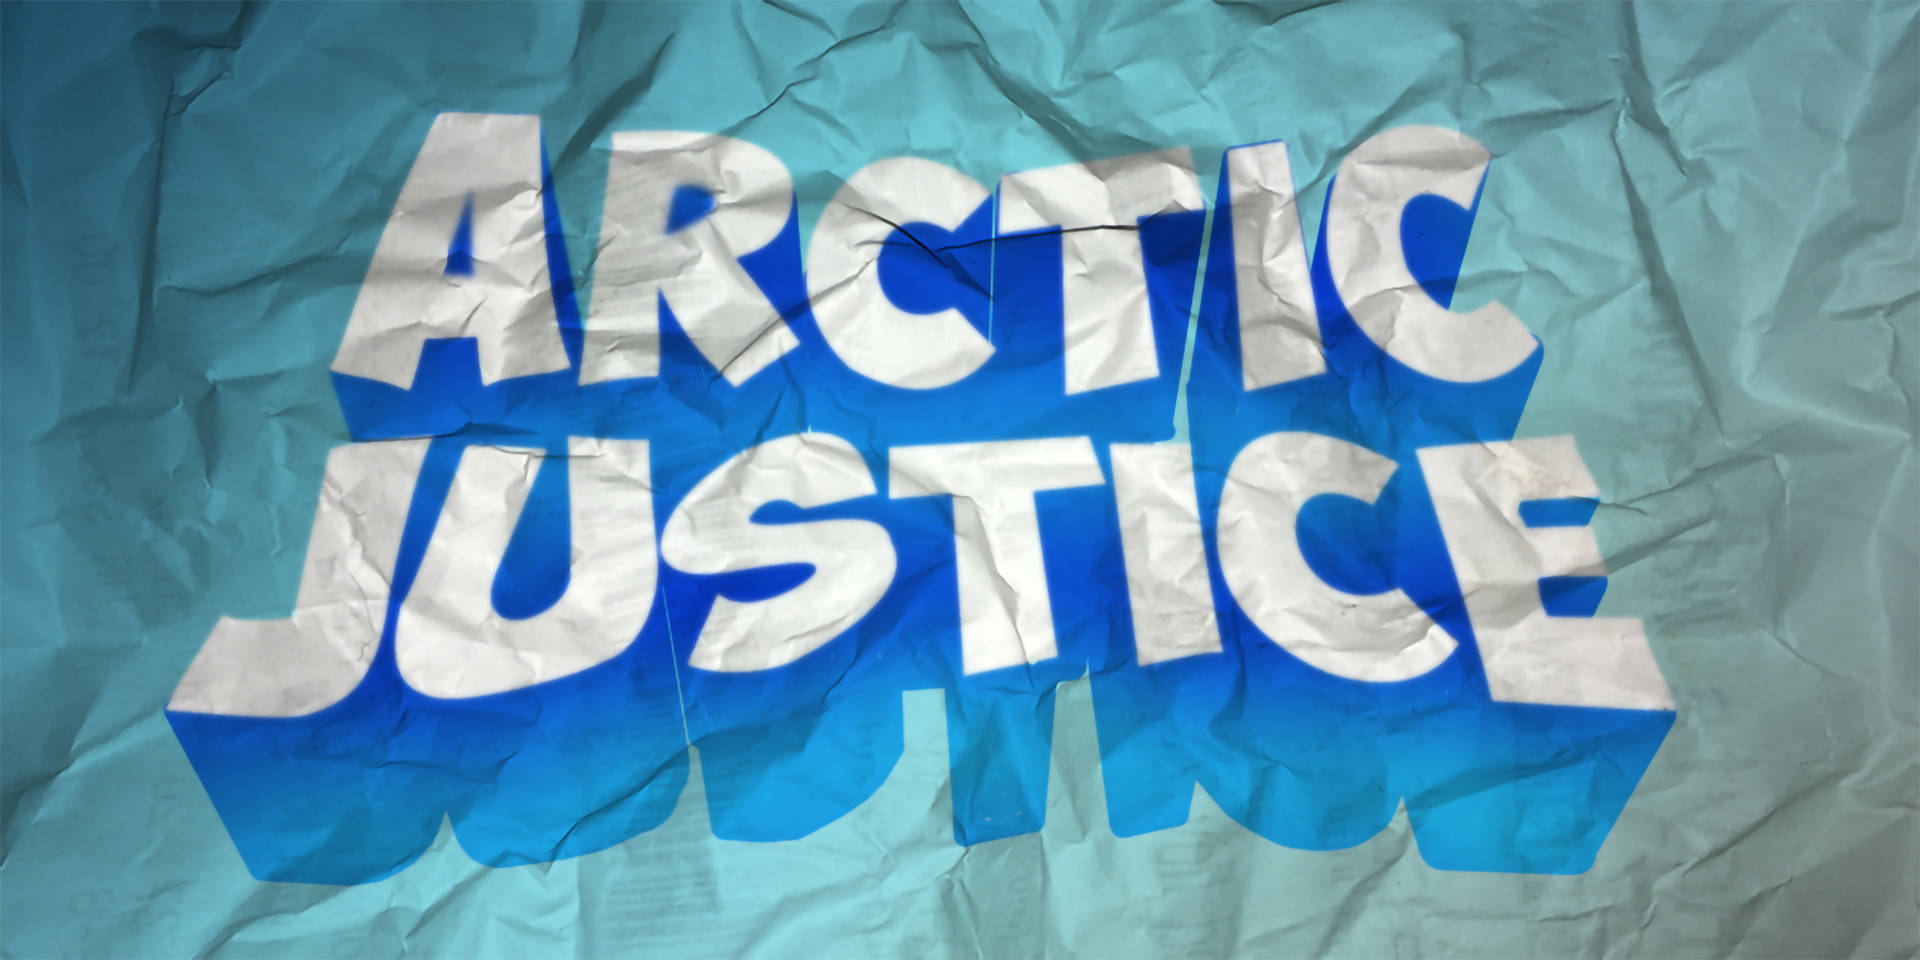 Arctic Justice Crumpled Logo Wallpaper